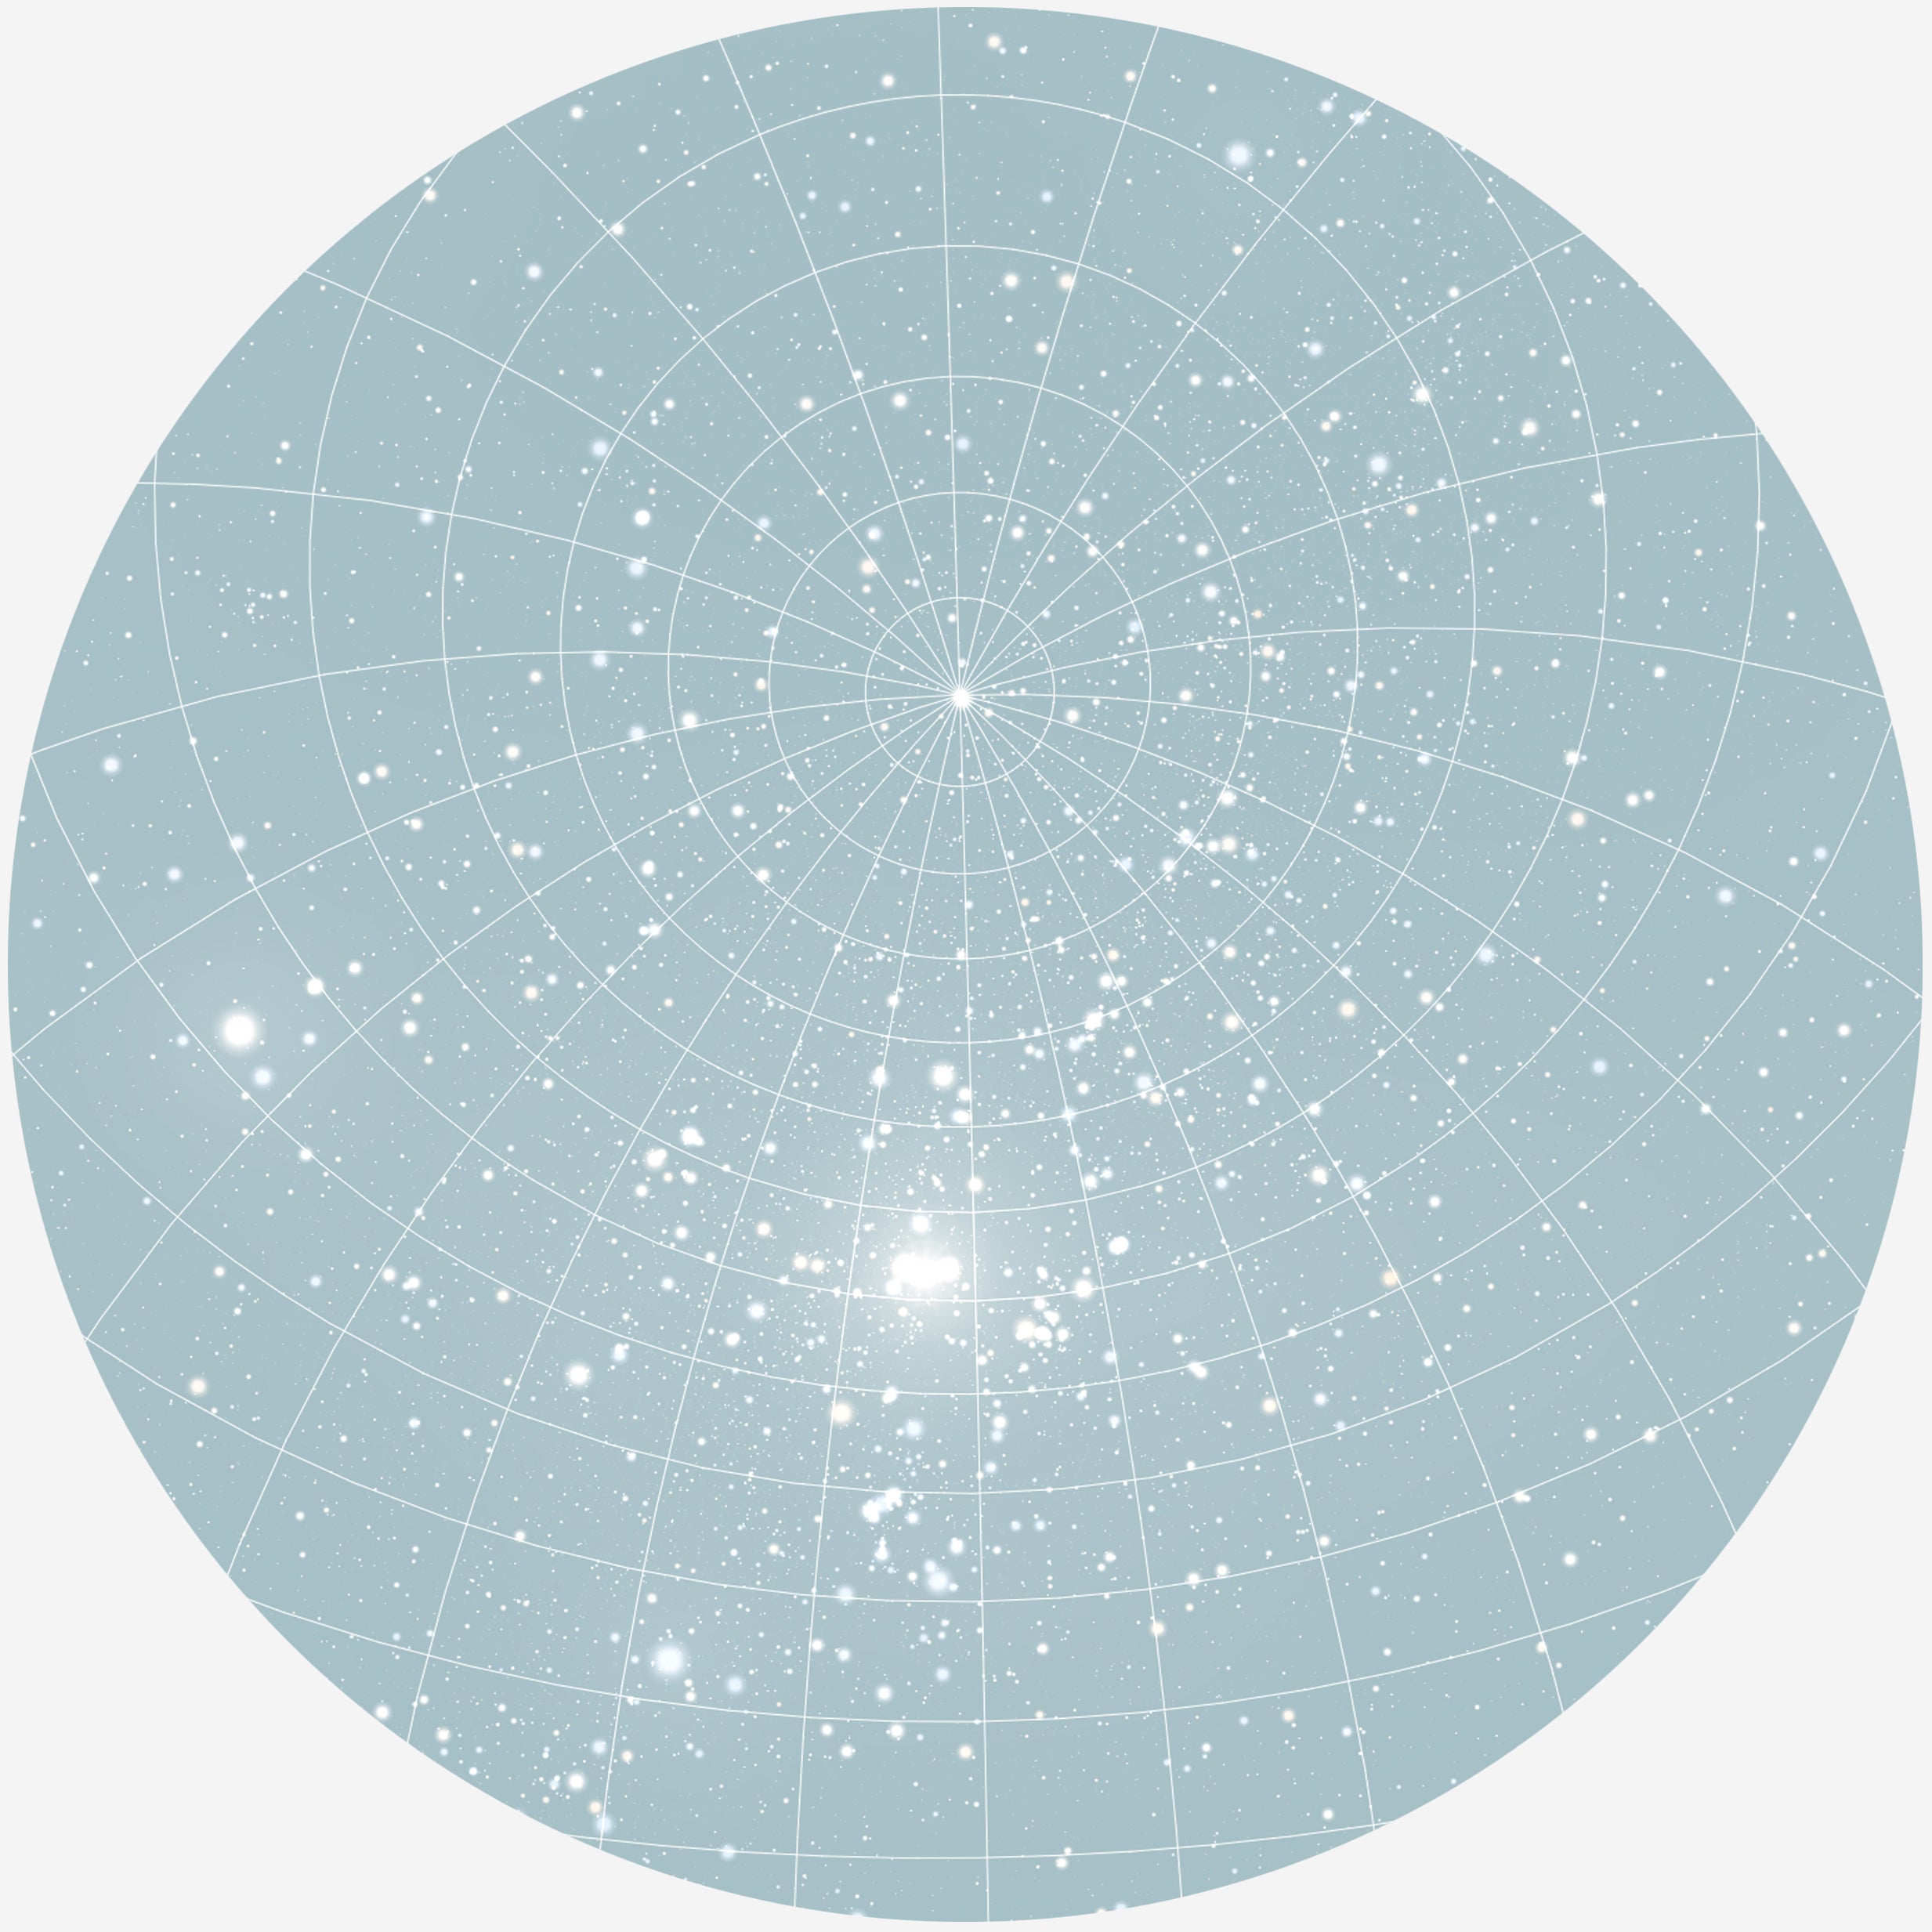 Se RUND PLAKAT MED PERSONLIG STJERNEHIMMEL (LYSEBLÅ) - 30 cm / Stjernehimmel med gitter hos KISPUS